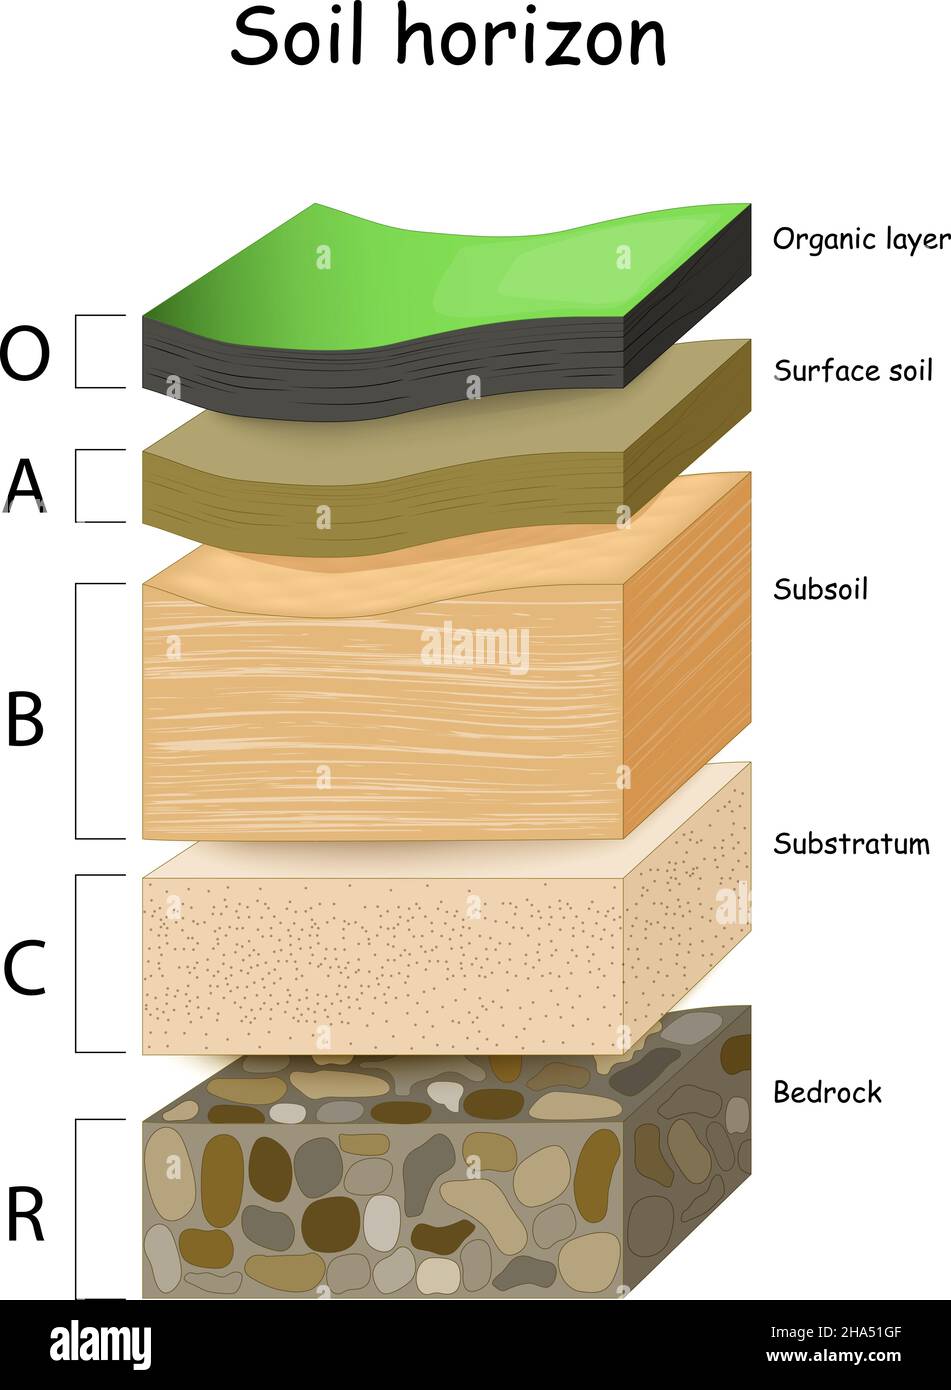 couches du sol.Une coupe transversale d'un sol, révélant des horizons.Exemple de profil de sol : organique, de surface, sous-sol, substrat et soubassement. Illustration de Vecteur